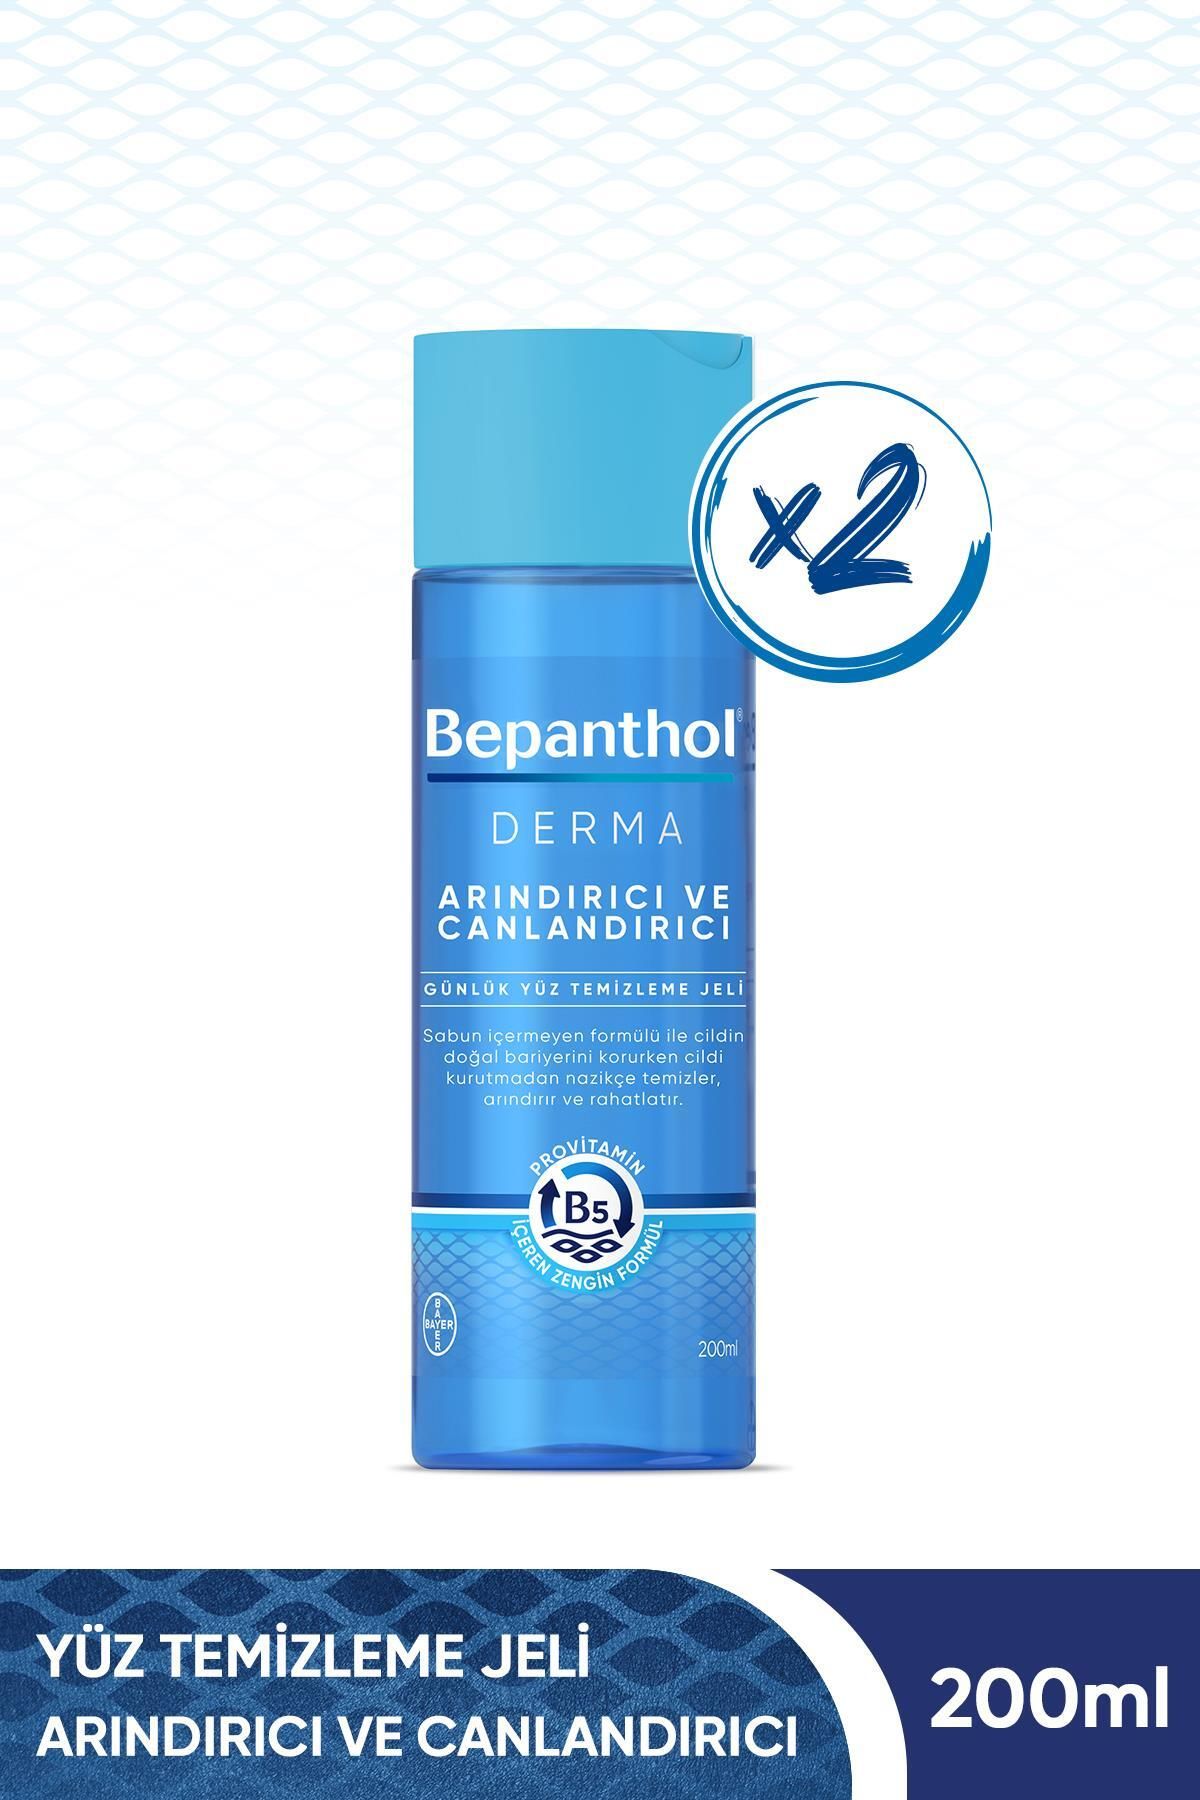 Bepanthol Derma Arındırıcı&canlandırıcı Yüz Temizleme Jeli 200 ml 2'li Paket